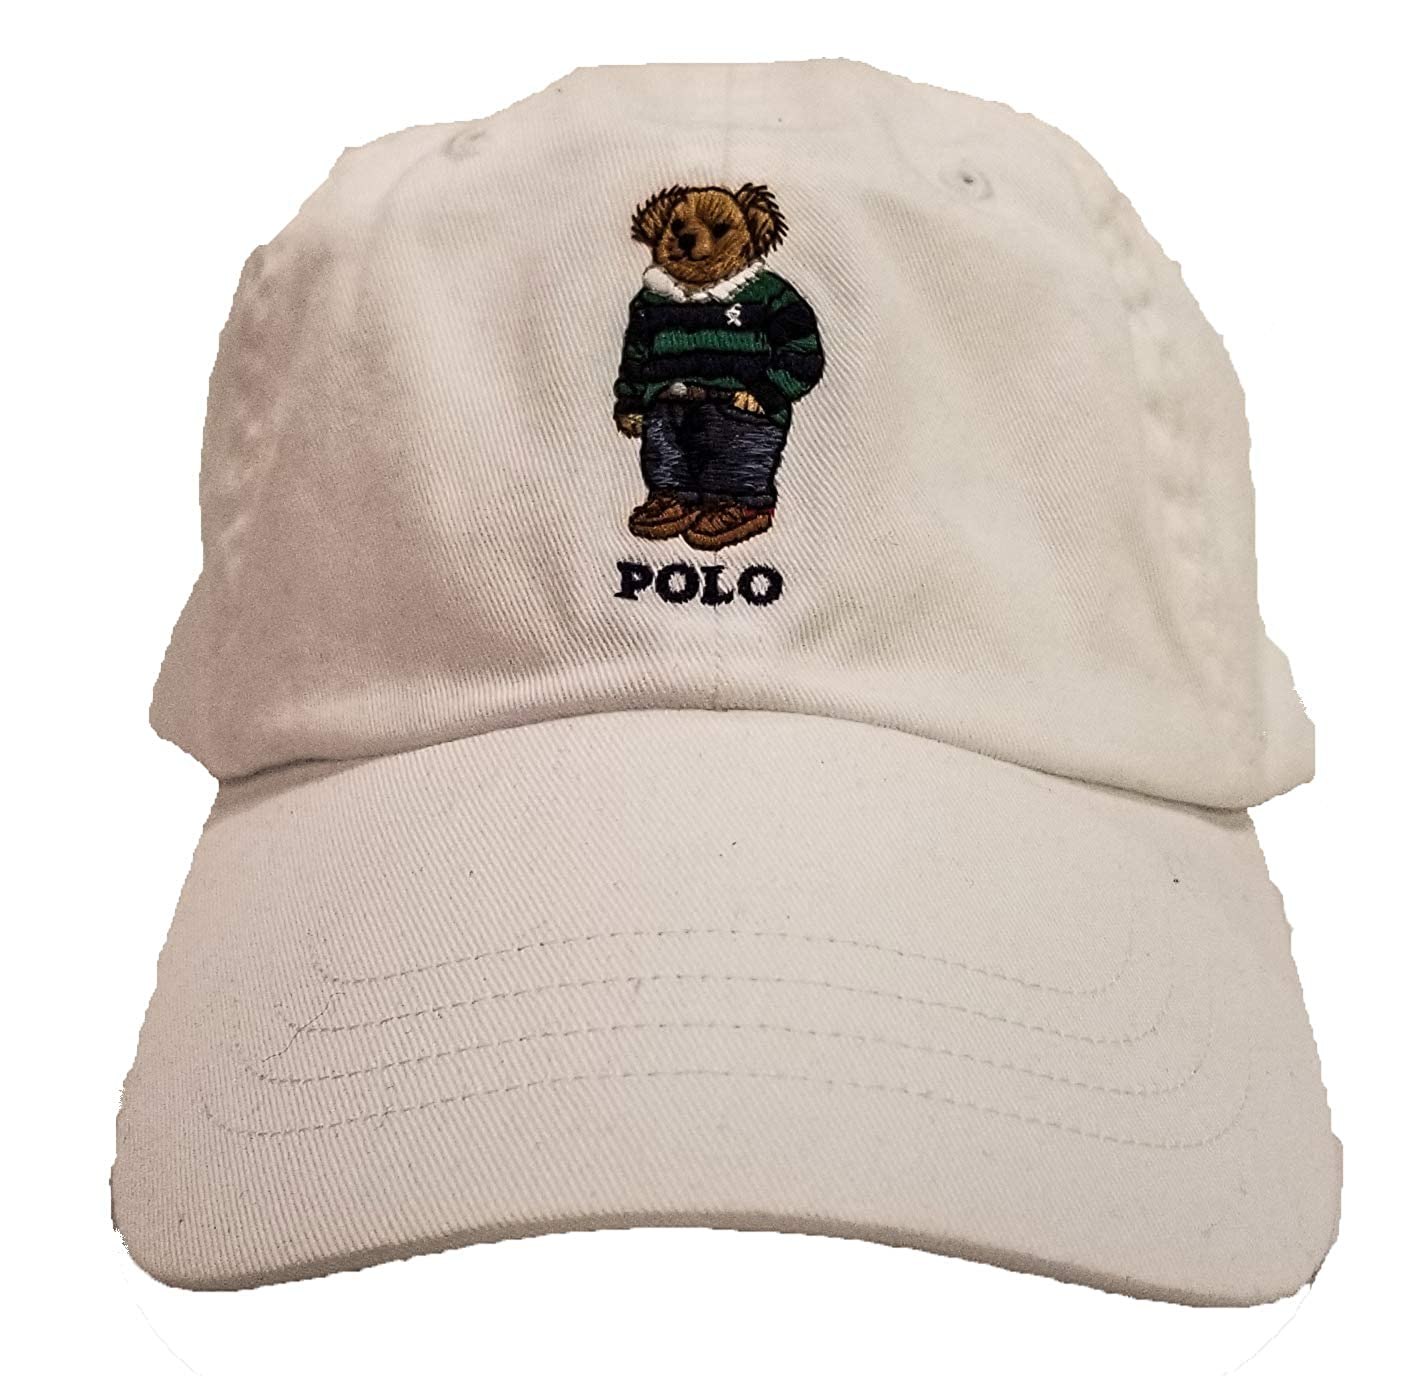 Polo Ralph Lauren Bear cap